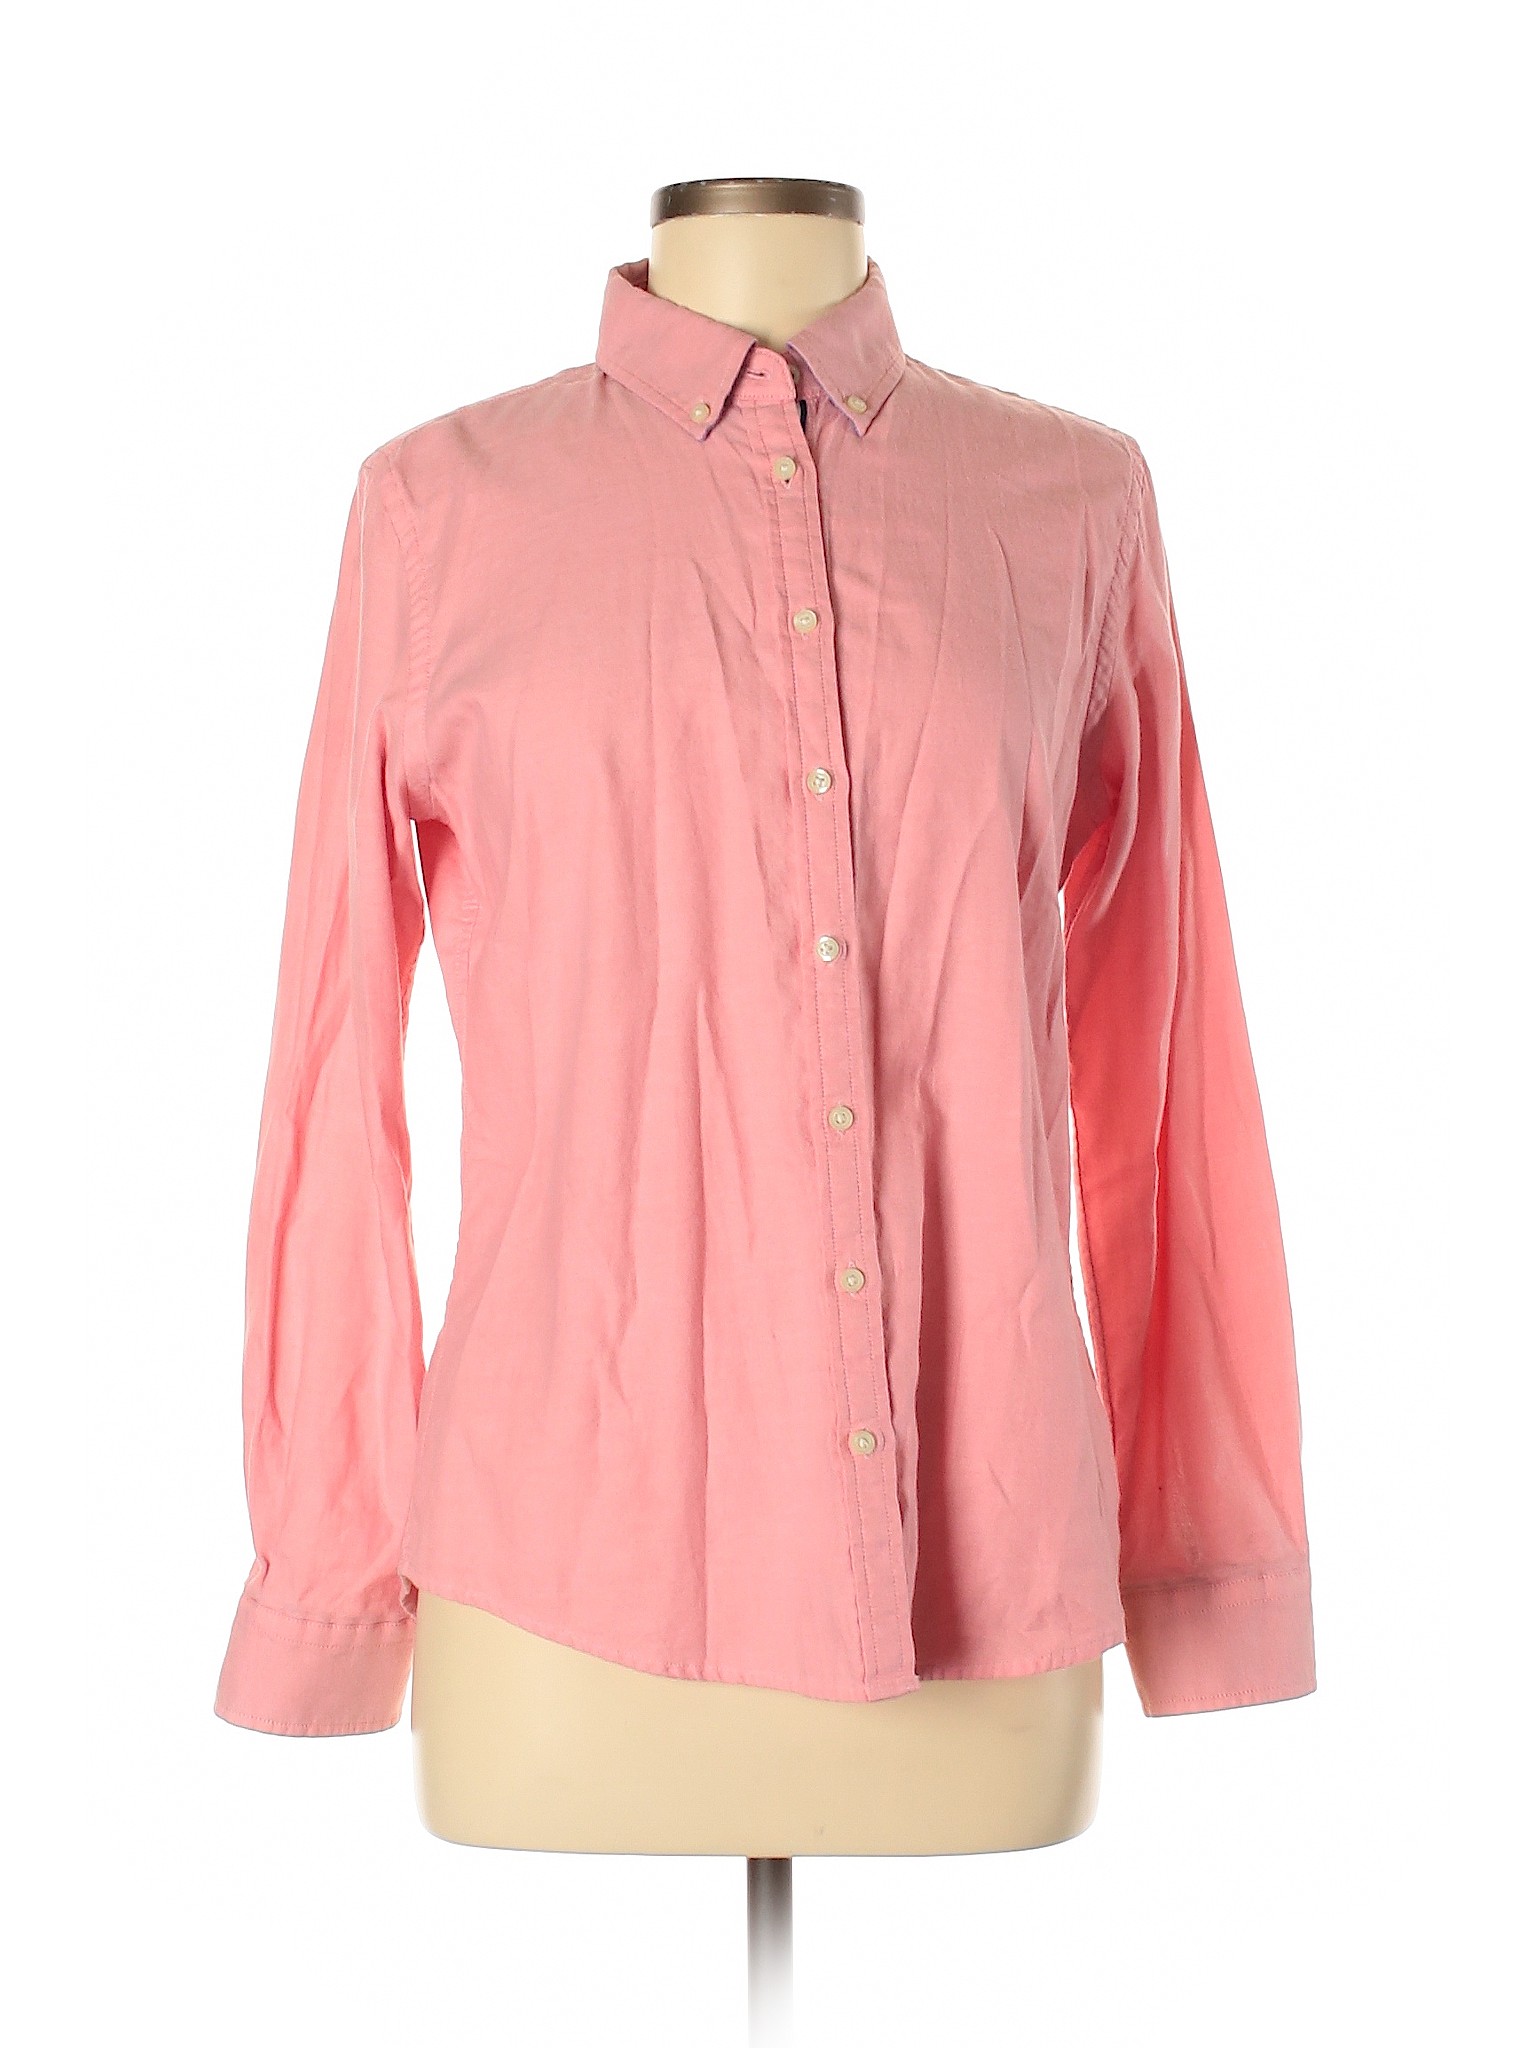 Banana Republic Women Pink Long Sleeve Button-Down Shirt M | eBay